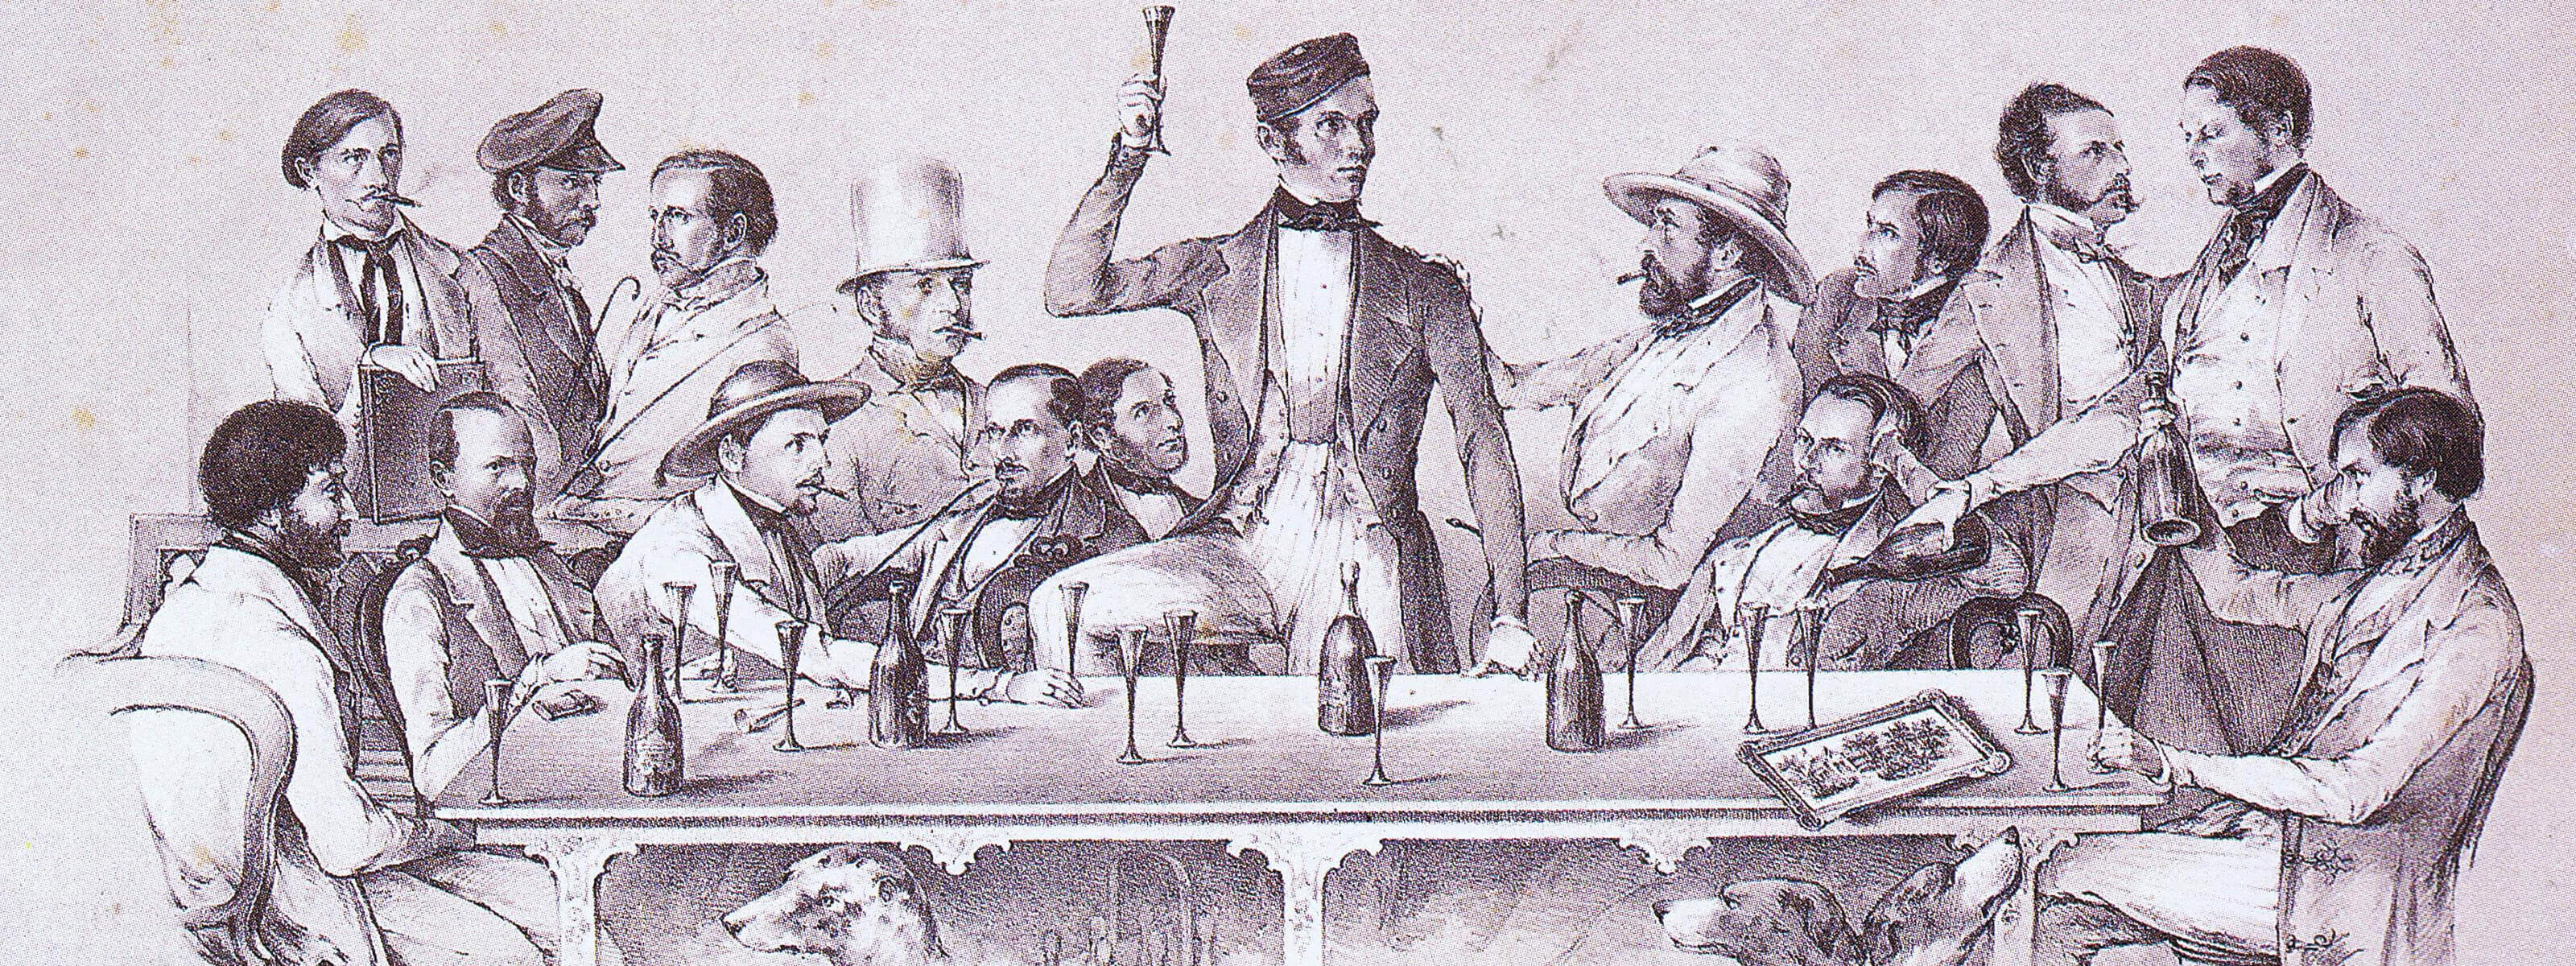 Altertümliche Zeichnung mit Männer, welche am Tisch sitzen und Sekt trinken